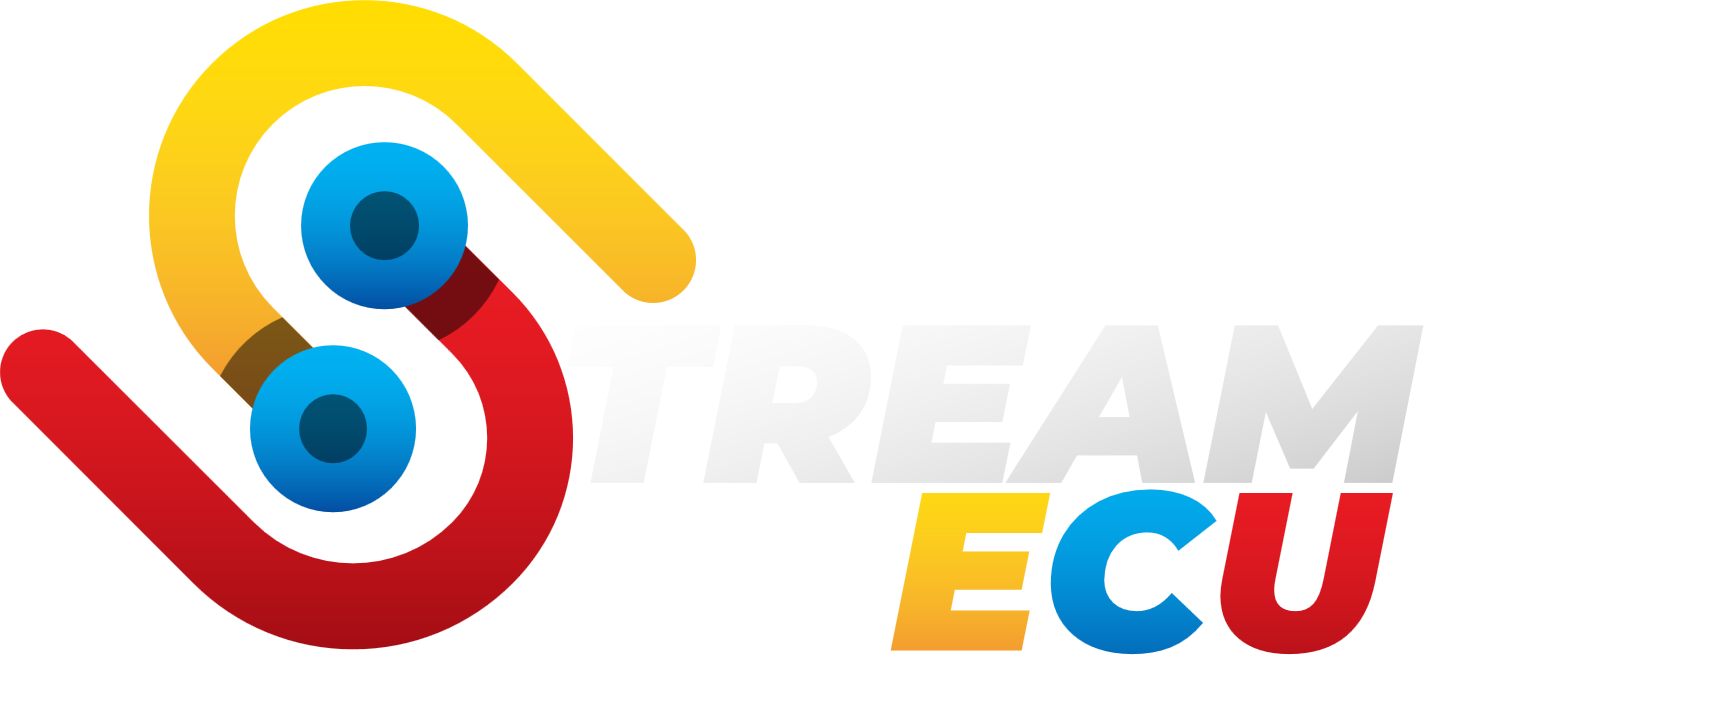 Stream Ecu Latam - Tienda Ecommerce